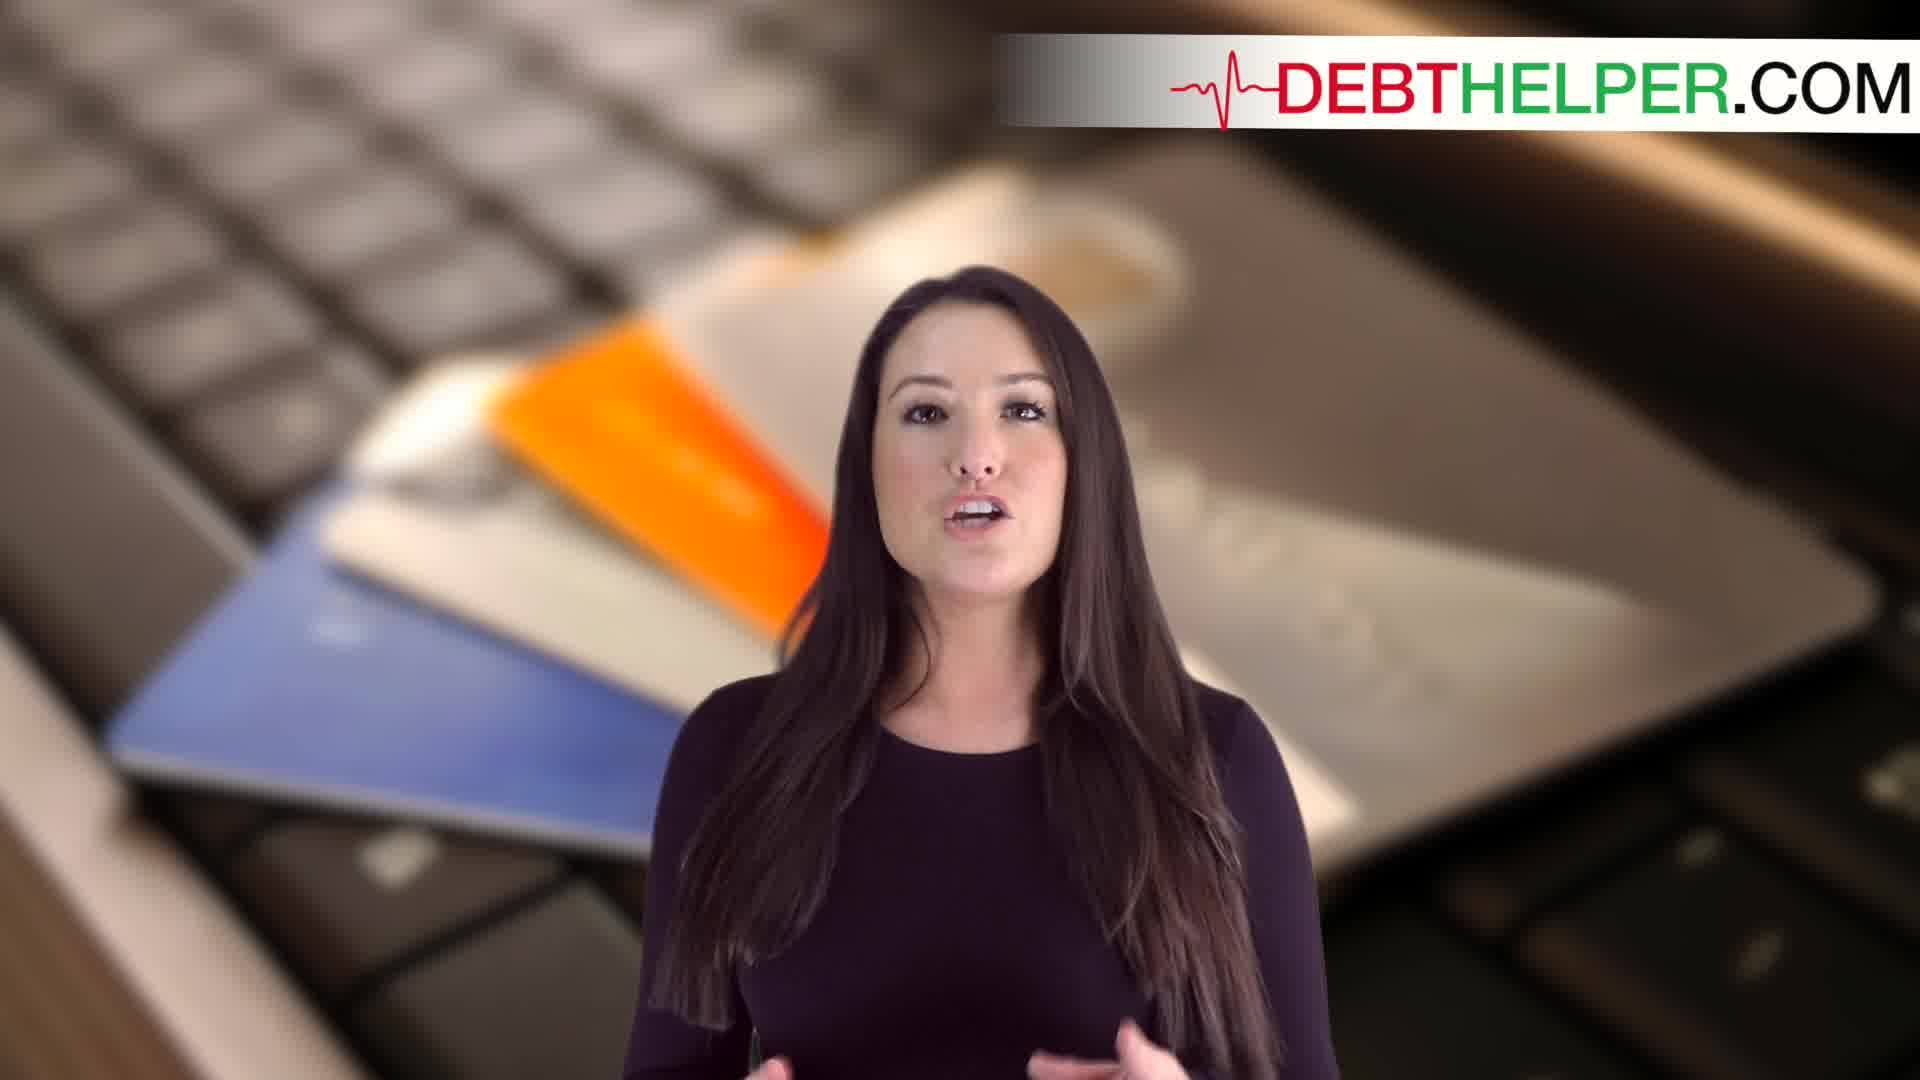 DebtHelper.com